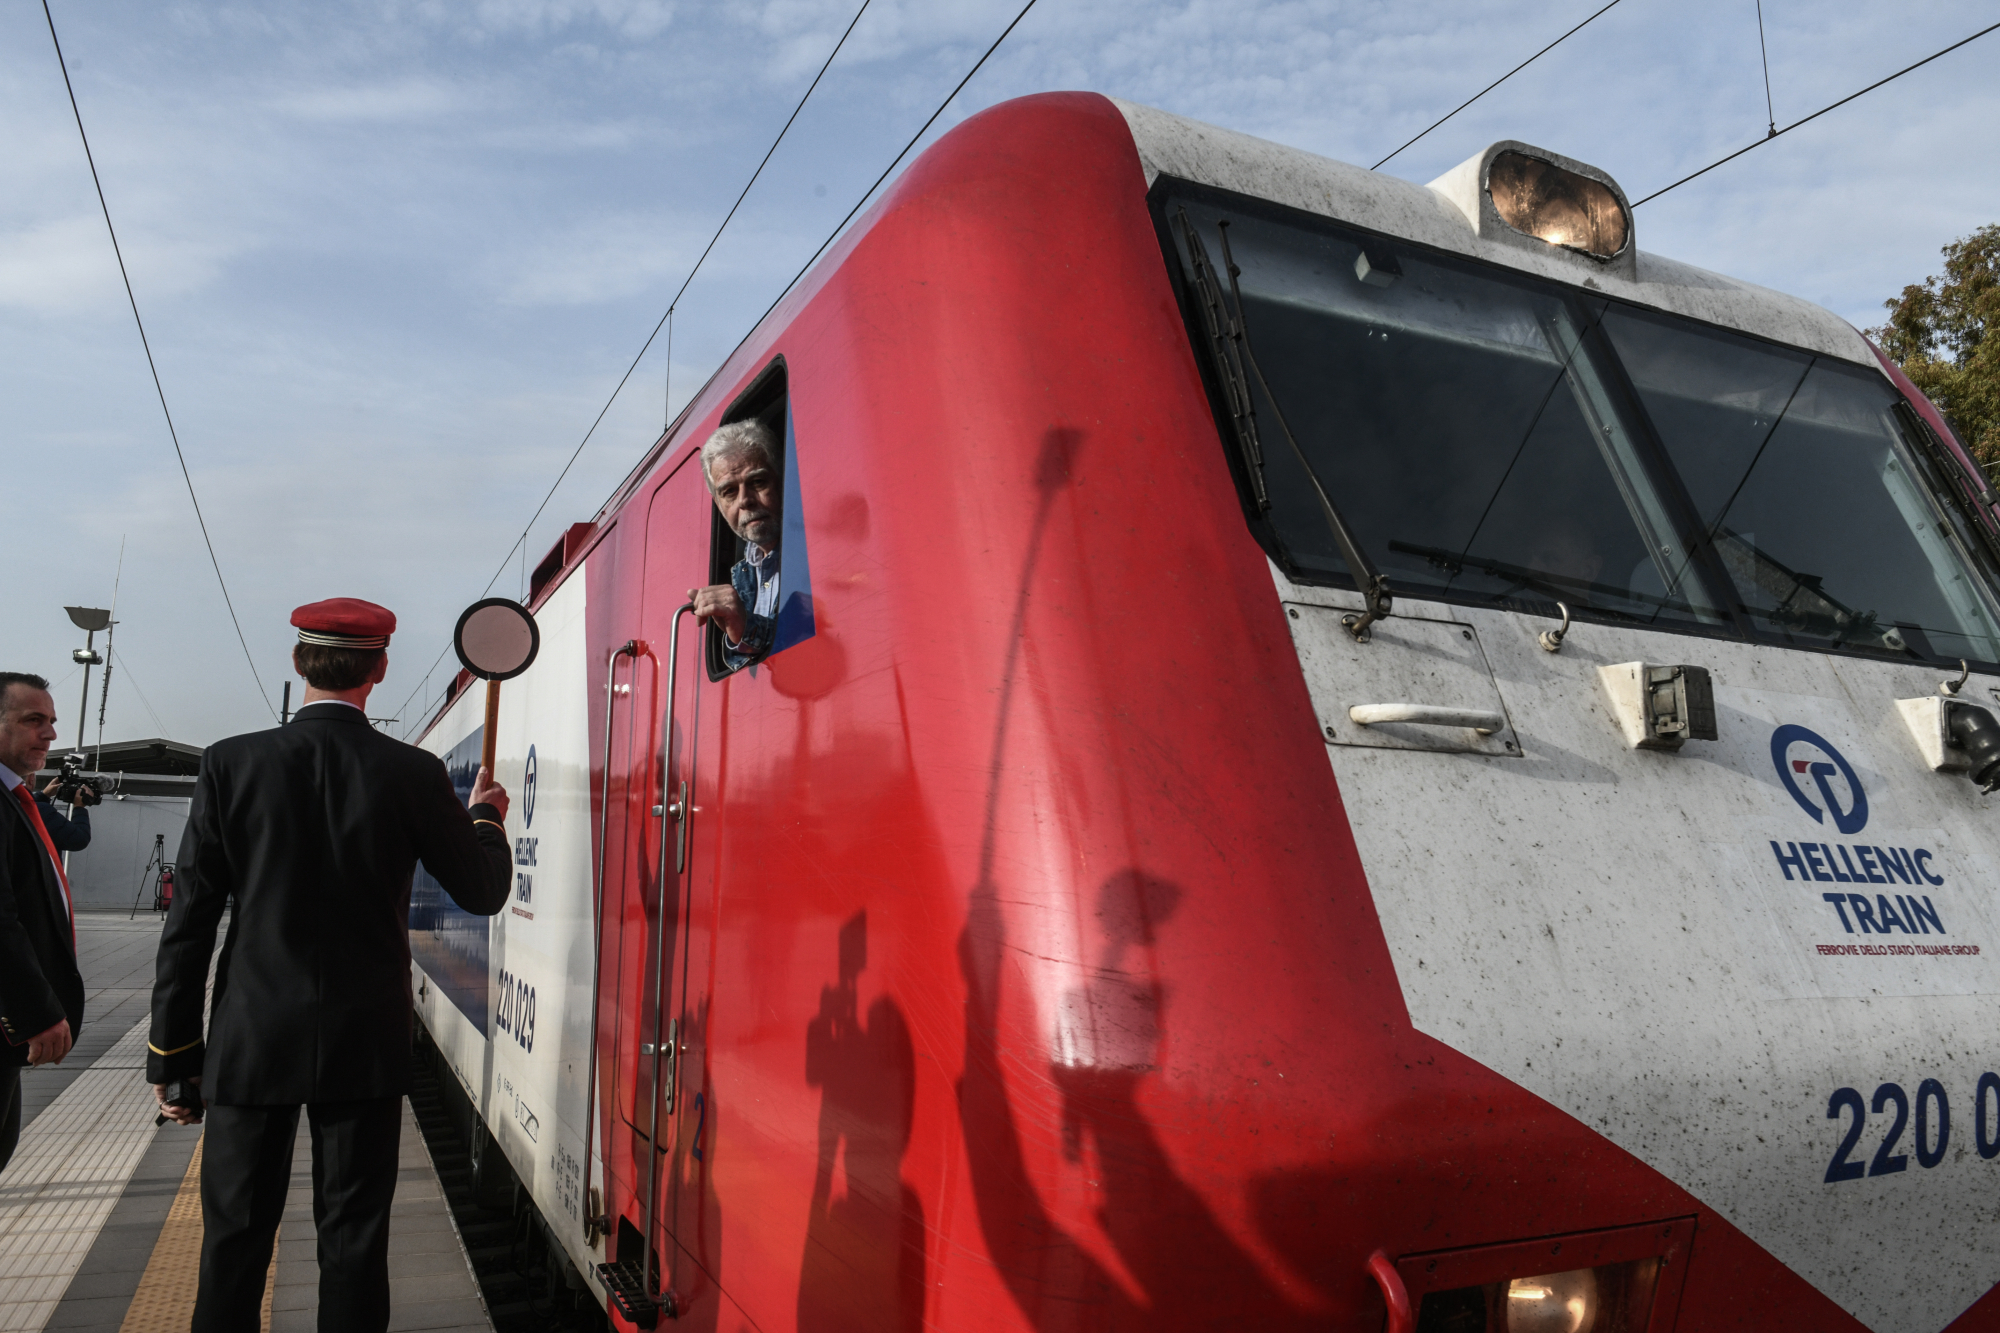 Τρένα: Έφτασε στη Θεσσαλονίκη το Intercity από την Αθήνα – Συγκινημένοι επιβάτες και μηχανοδηγοί